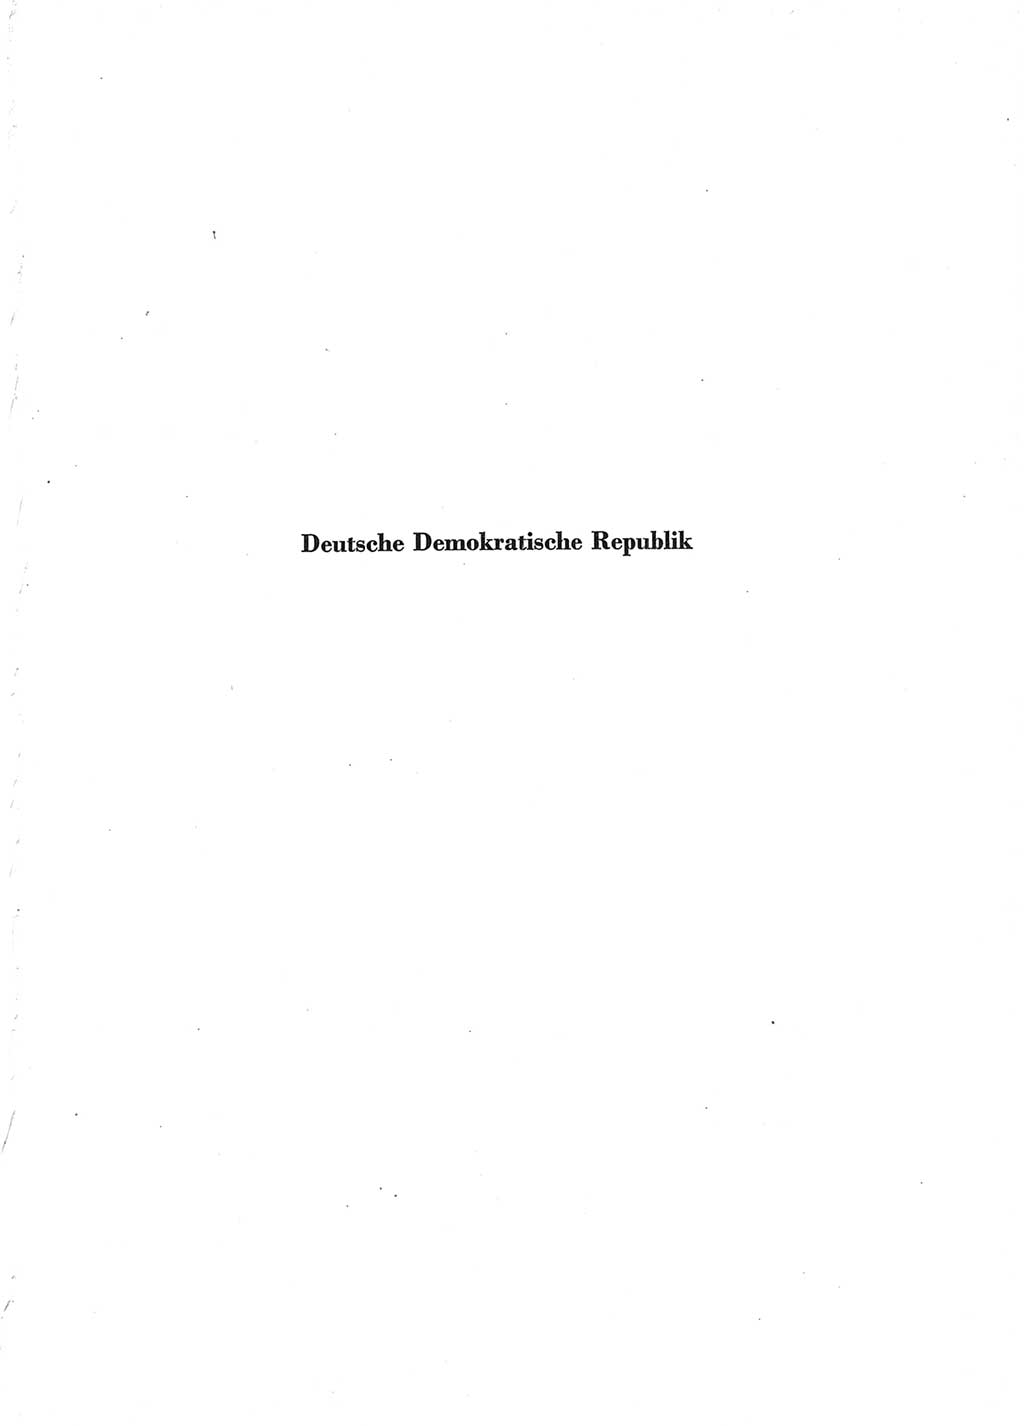 Statistisches Jahrbuch der Deutschen Demokratischen Republik (DDR) 1962, Seite 1 (Stat. Jb. DDR 1962, S. 1)